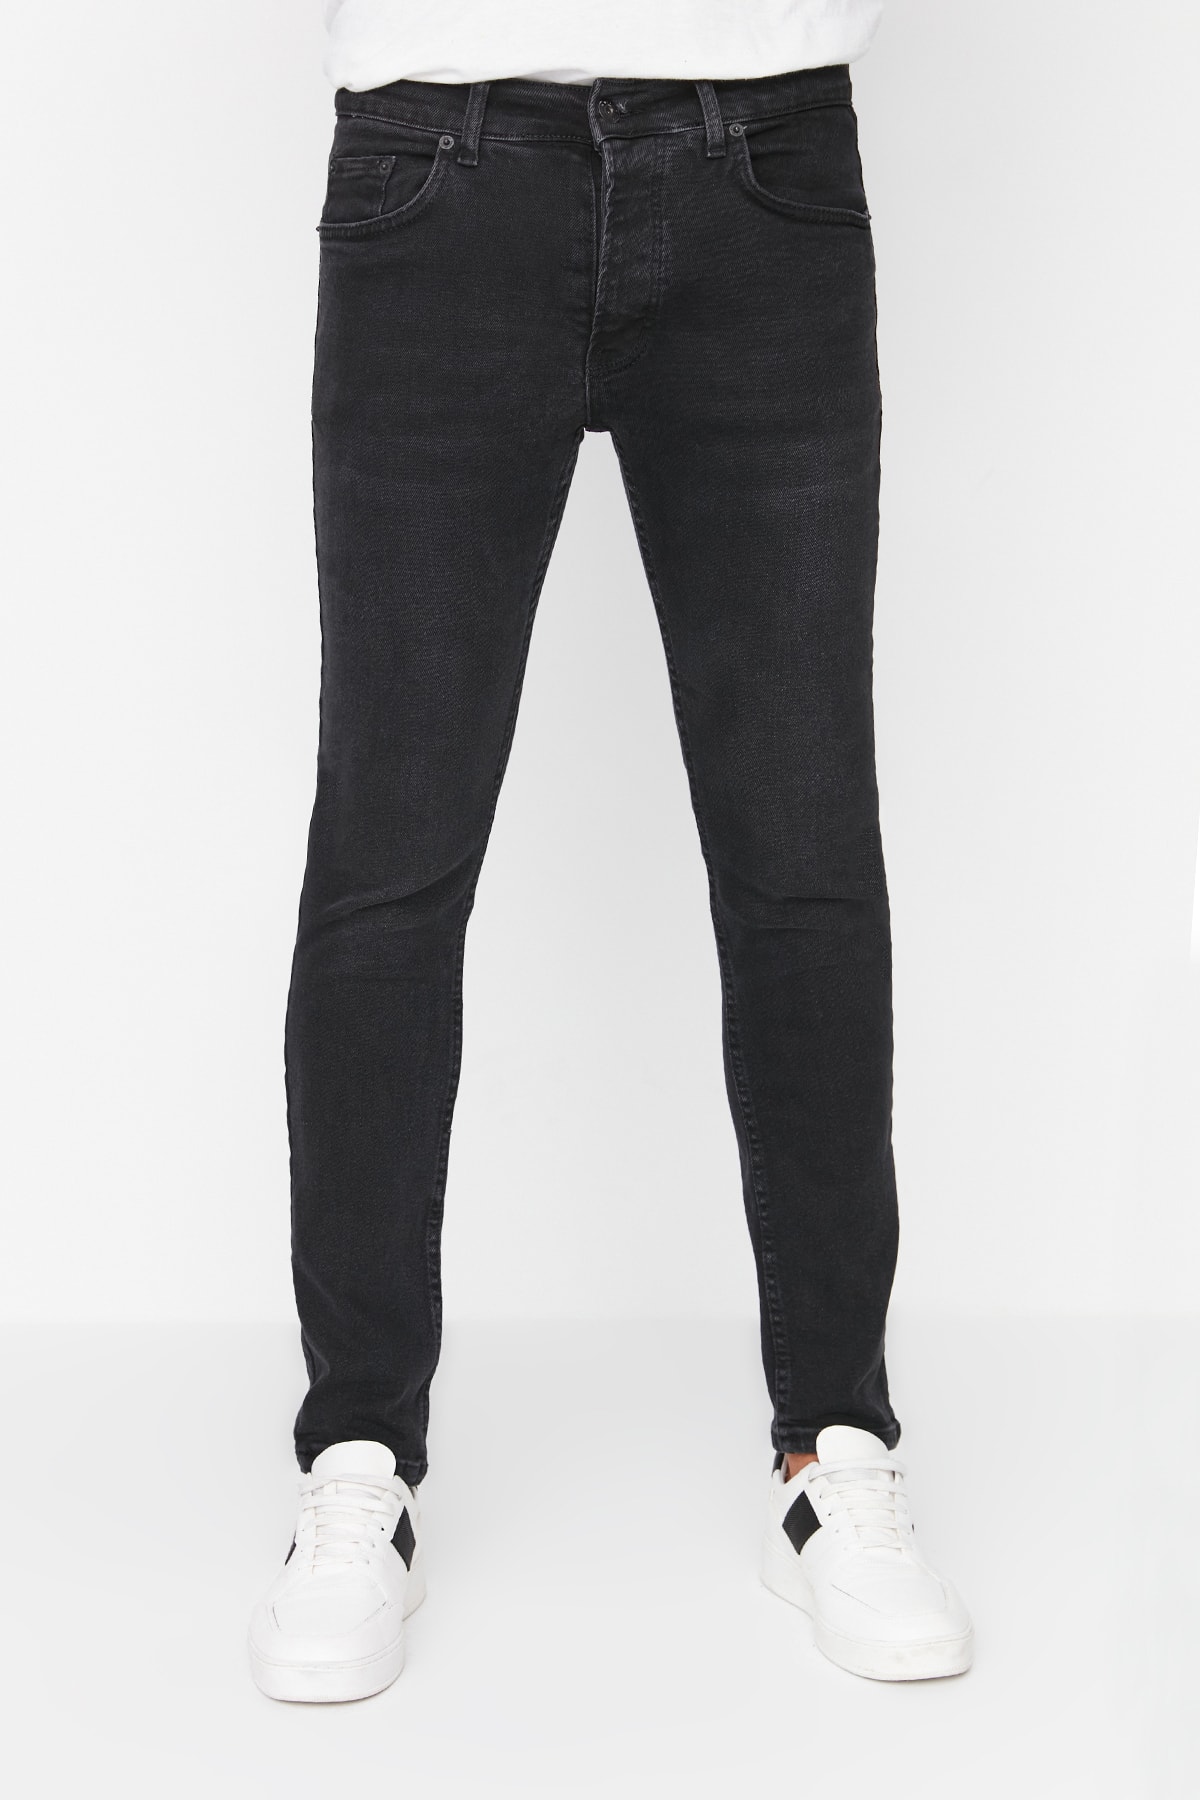 Джинсы Trendyol скинни, черный джинсы скинни размер 27 черный